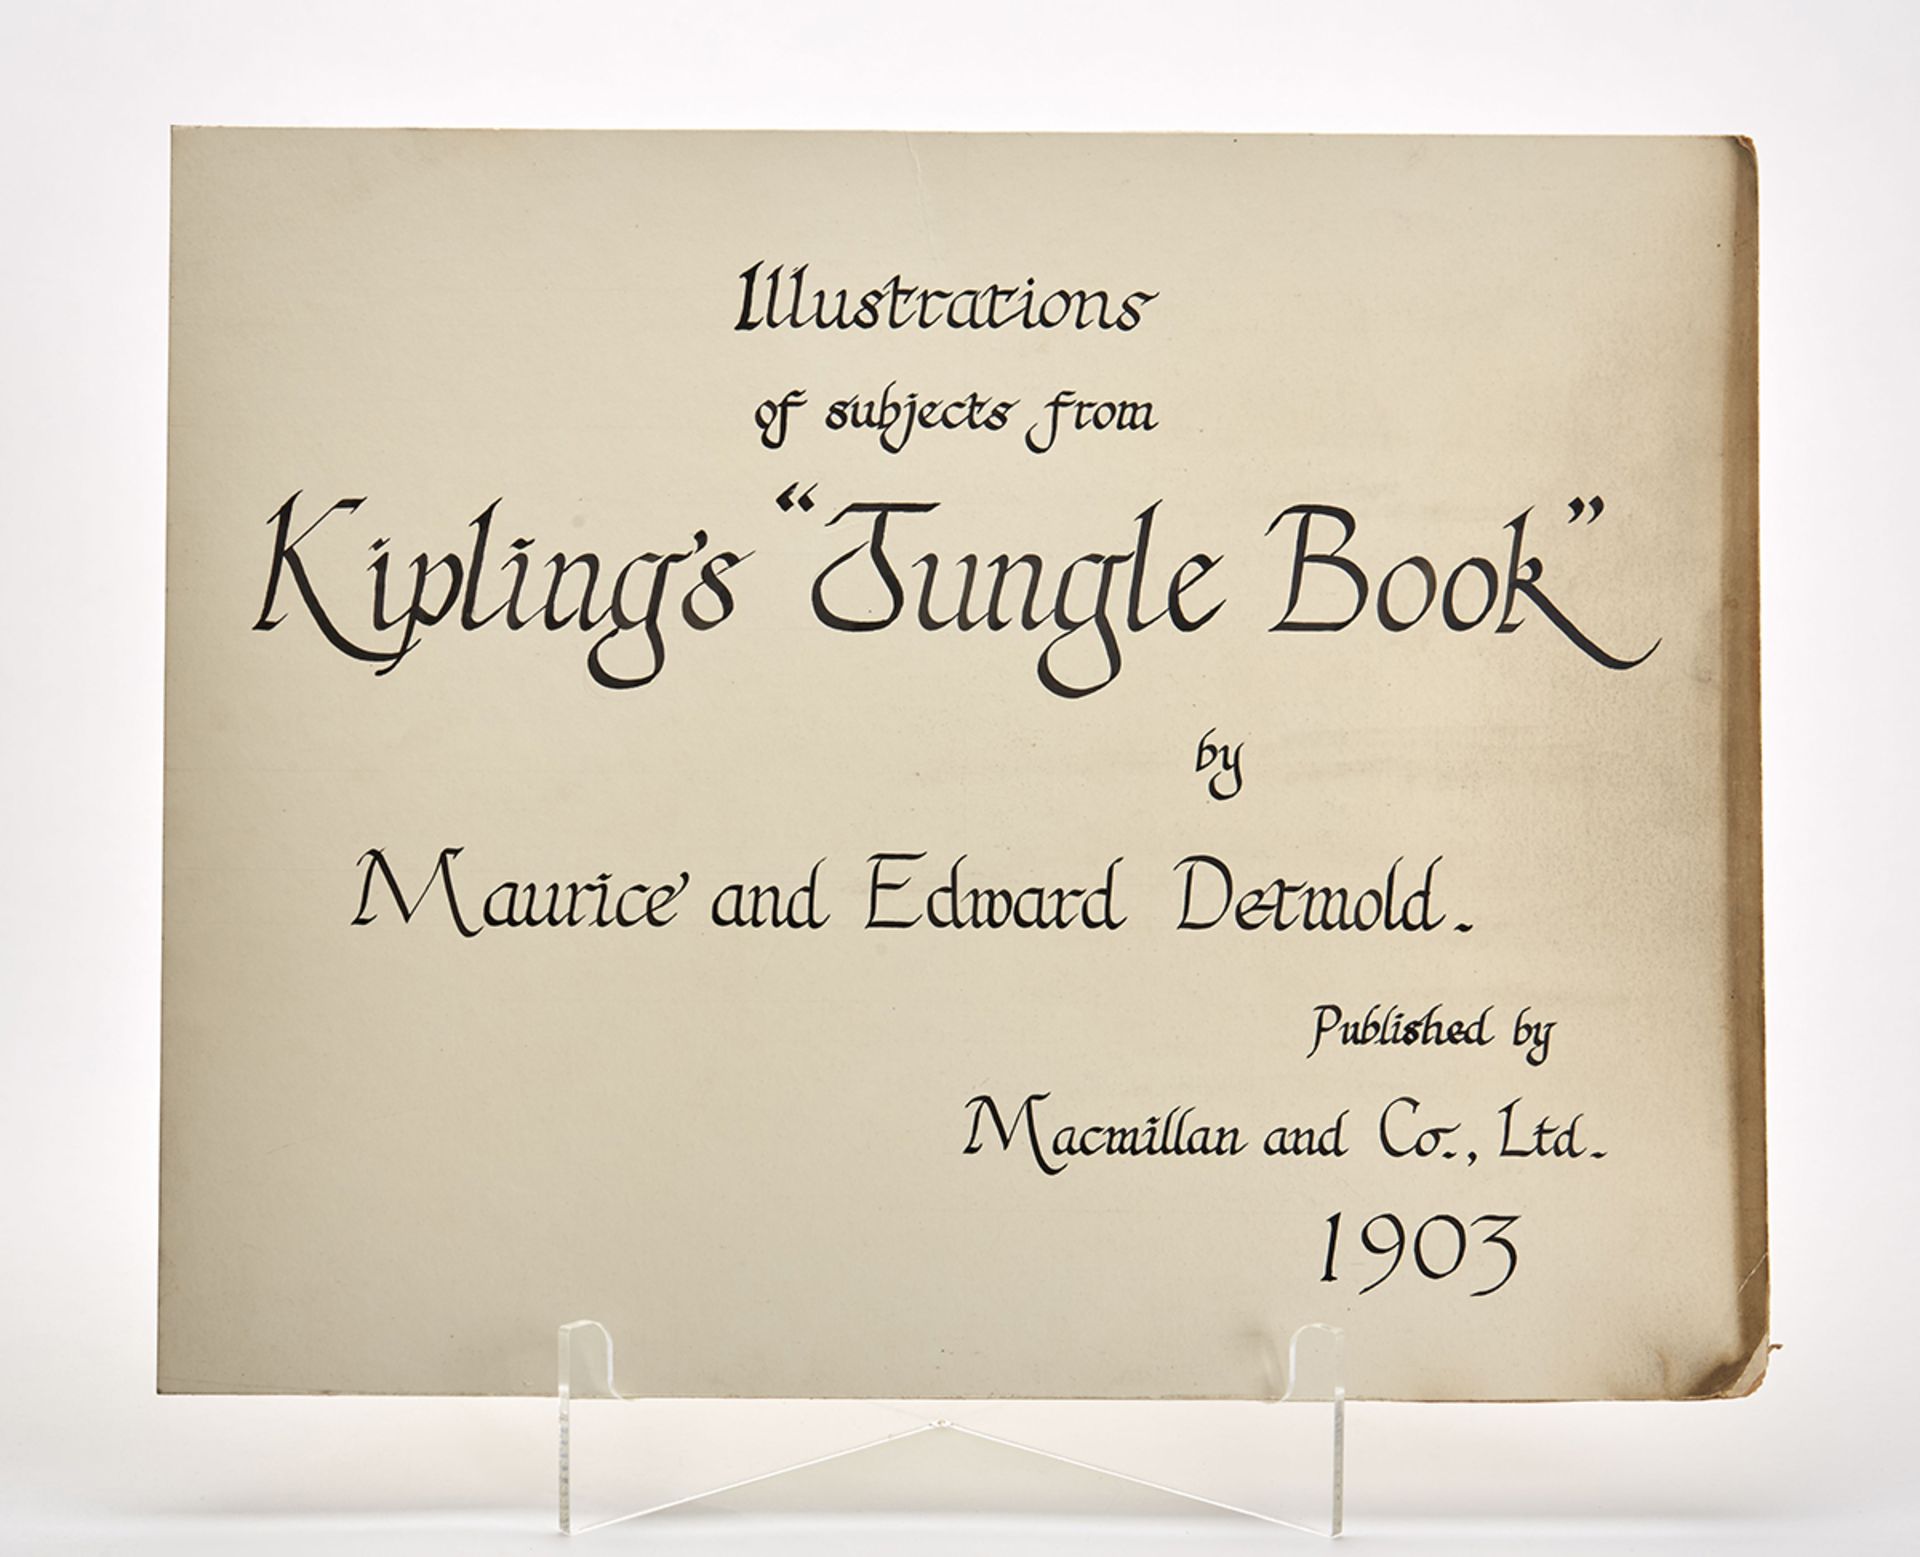 KIPLING'S JUNGLE BOOK MOCK-UP DETMOLD ILLUSTRATIONS 1903